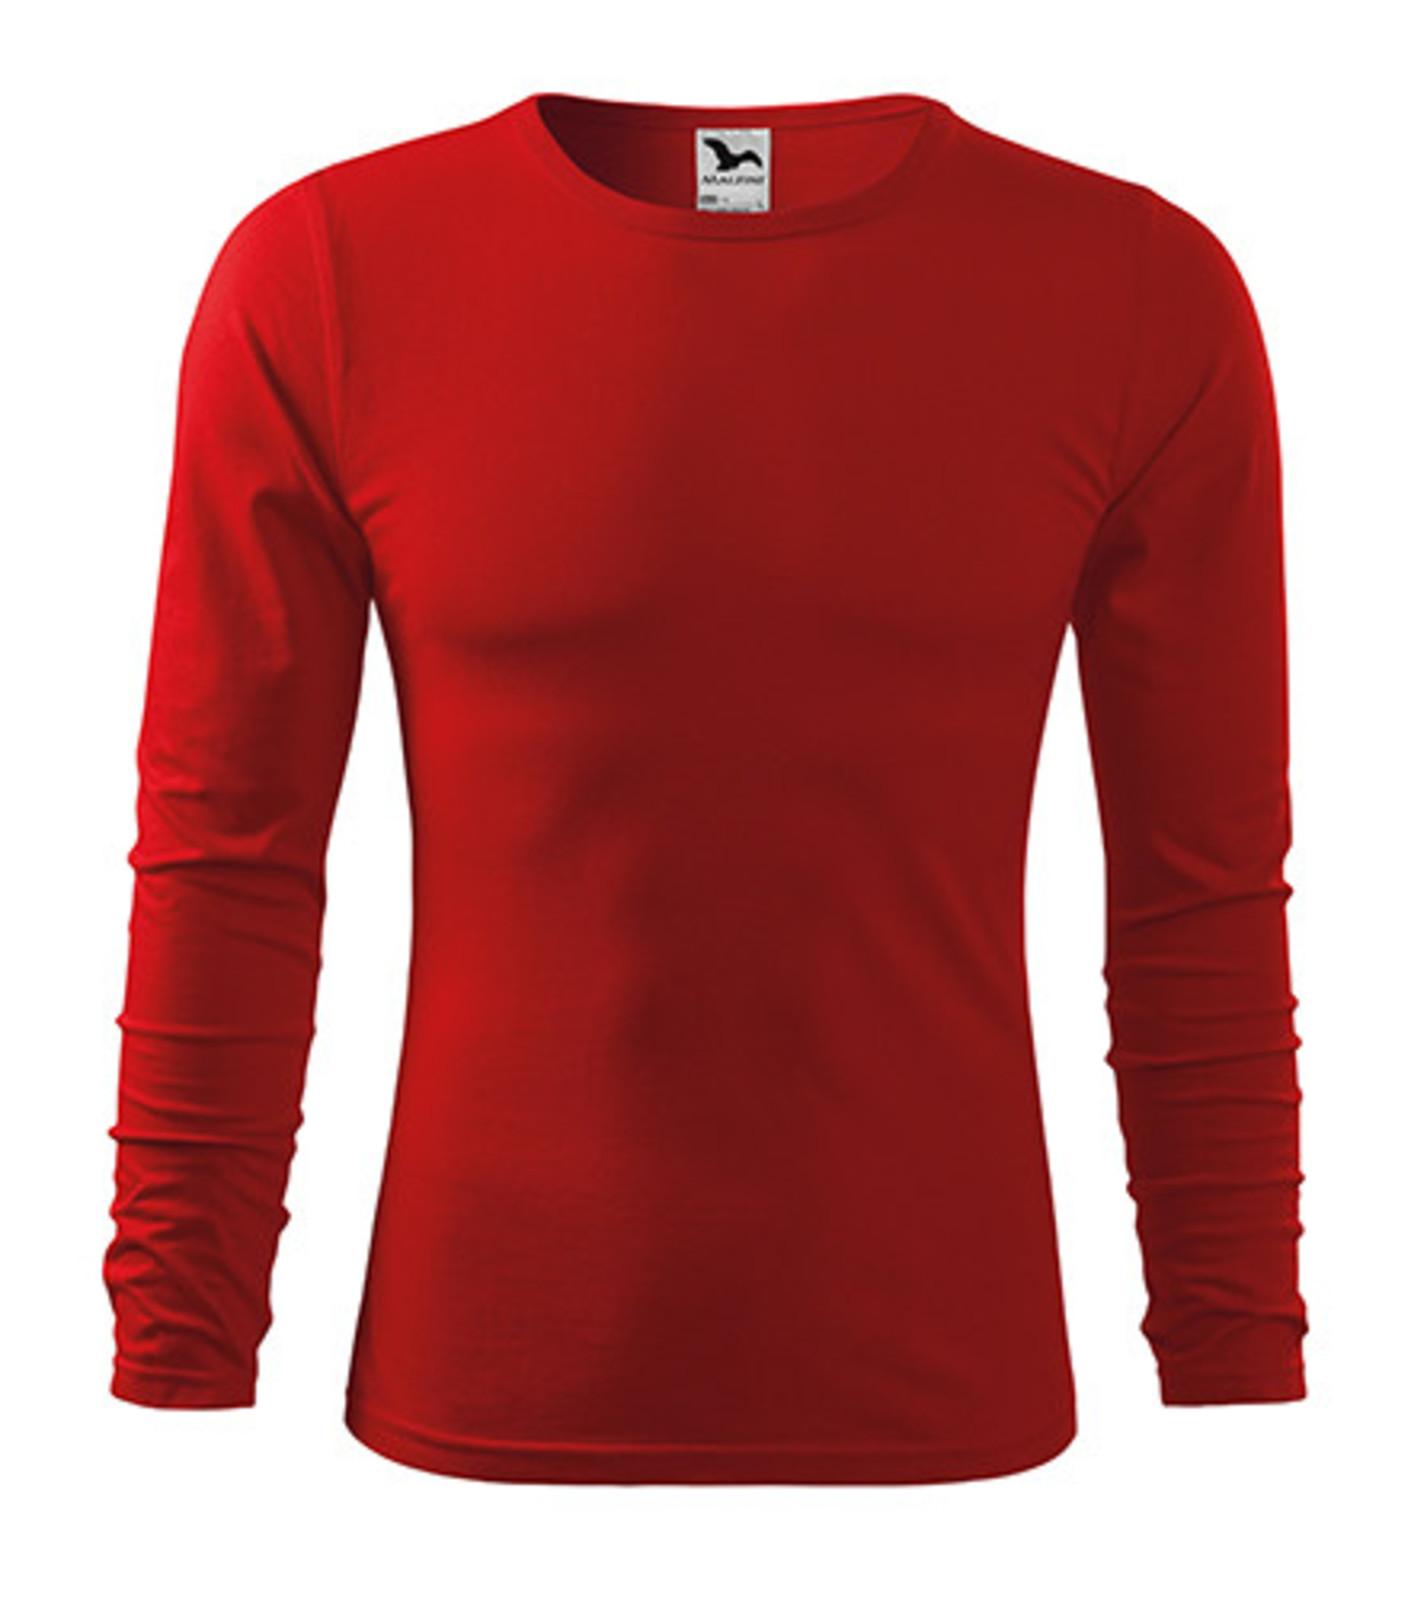 Pánske bavlnené tričko s dlhým rukávom Malfini Fit-T 119 - veľkosť: XXL, farba: červená